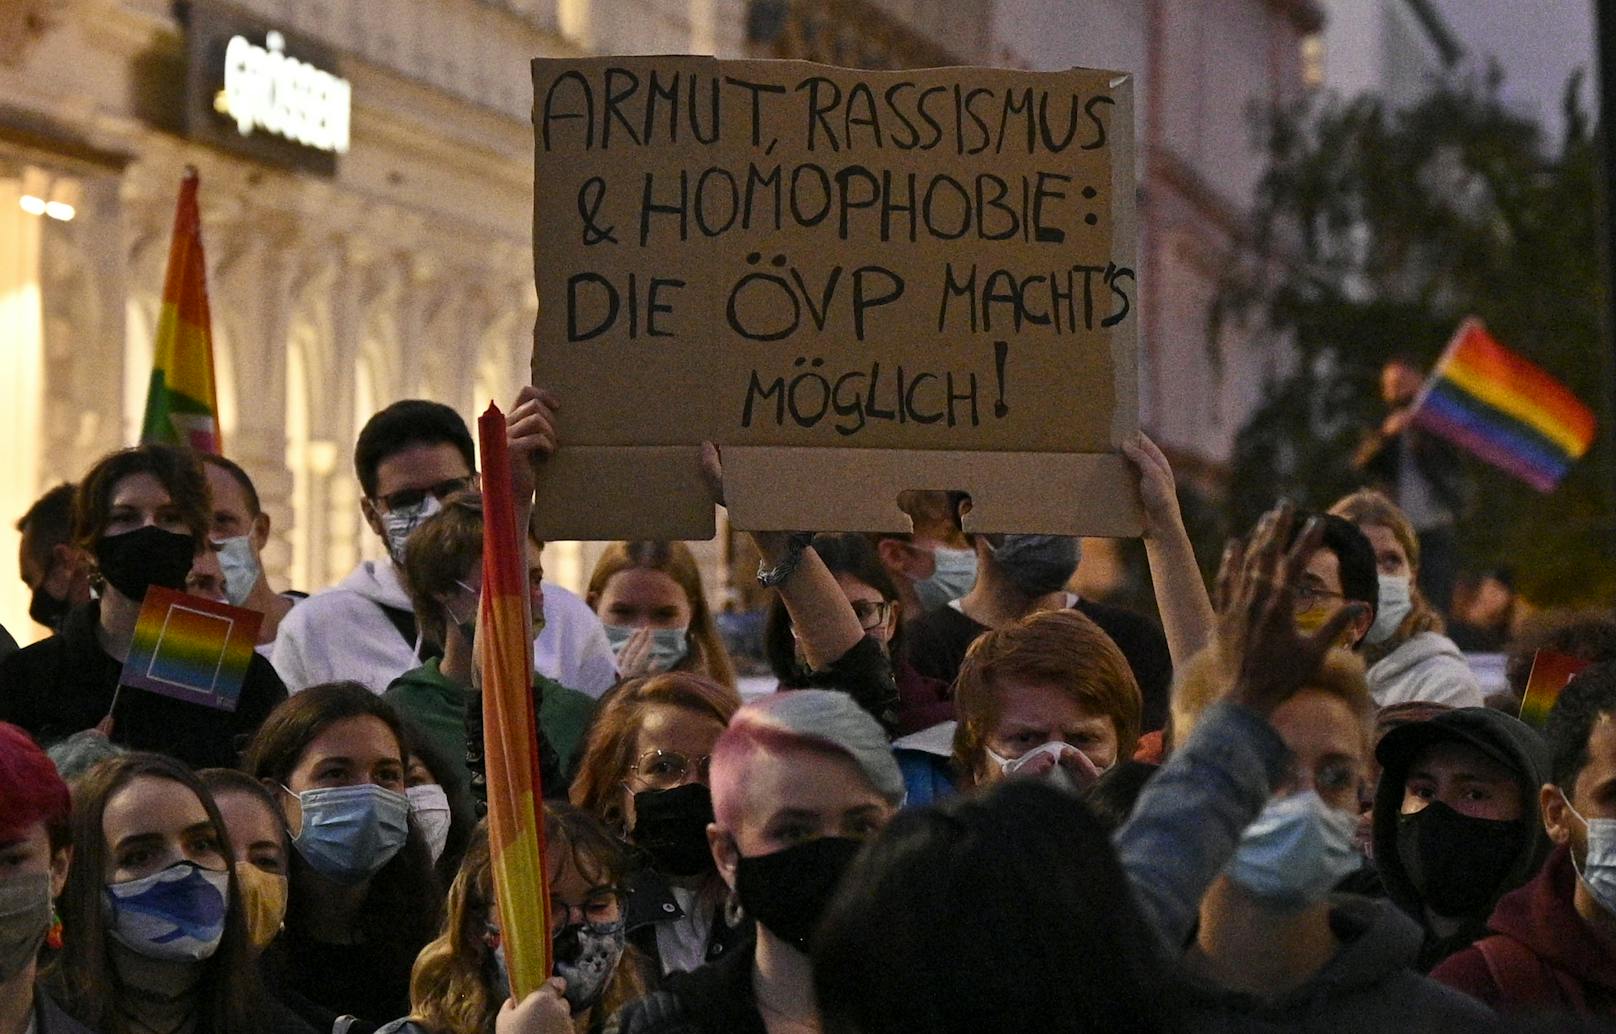 Als Reaktion wurde zur Gegendemonstration unter dem Motto "Dem Hass keinen Platz" aufgerufen. Sie fand am Montag ab 19 Uhr am Platz der Menschenrechte in Wien statt. "Hetze ist keine Meinungsfreiheit", heißt es in der Facebook-Beschreibung des Events.